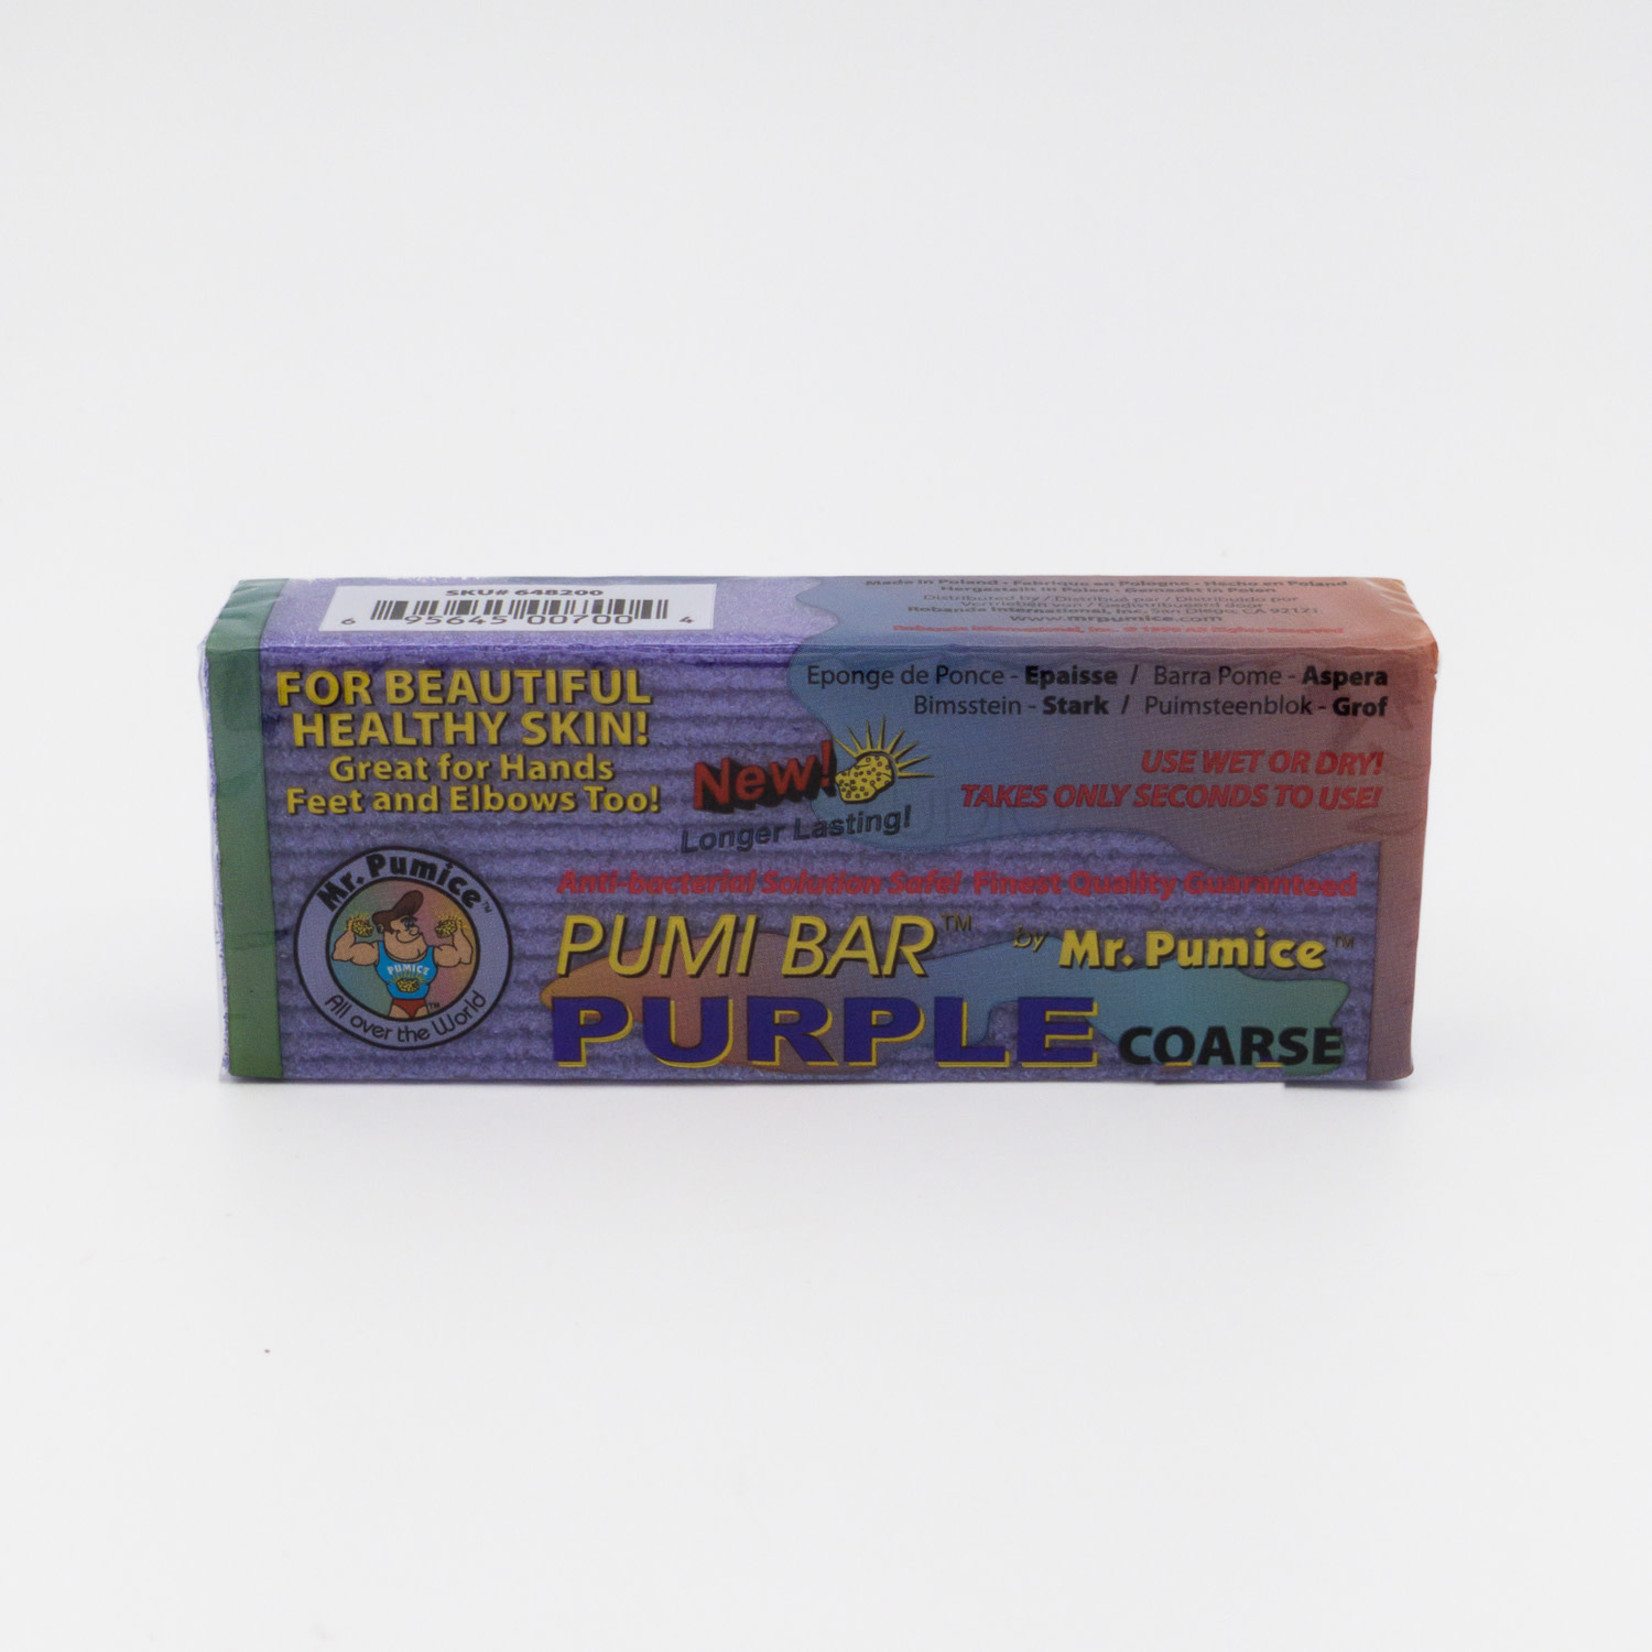 Mr. Pumice Mr. Pumice - Pumi Bar Purple - Coarse - 1 ct